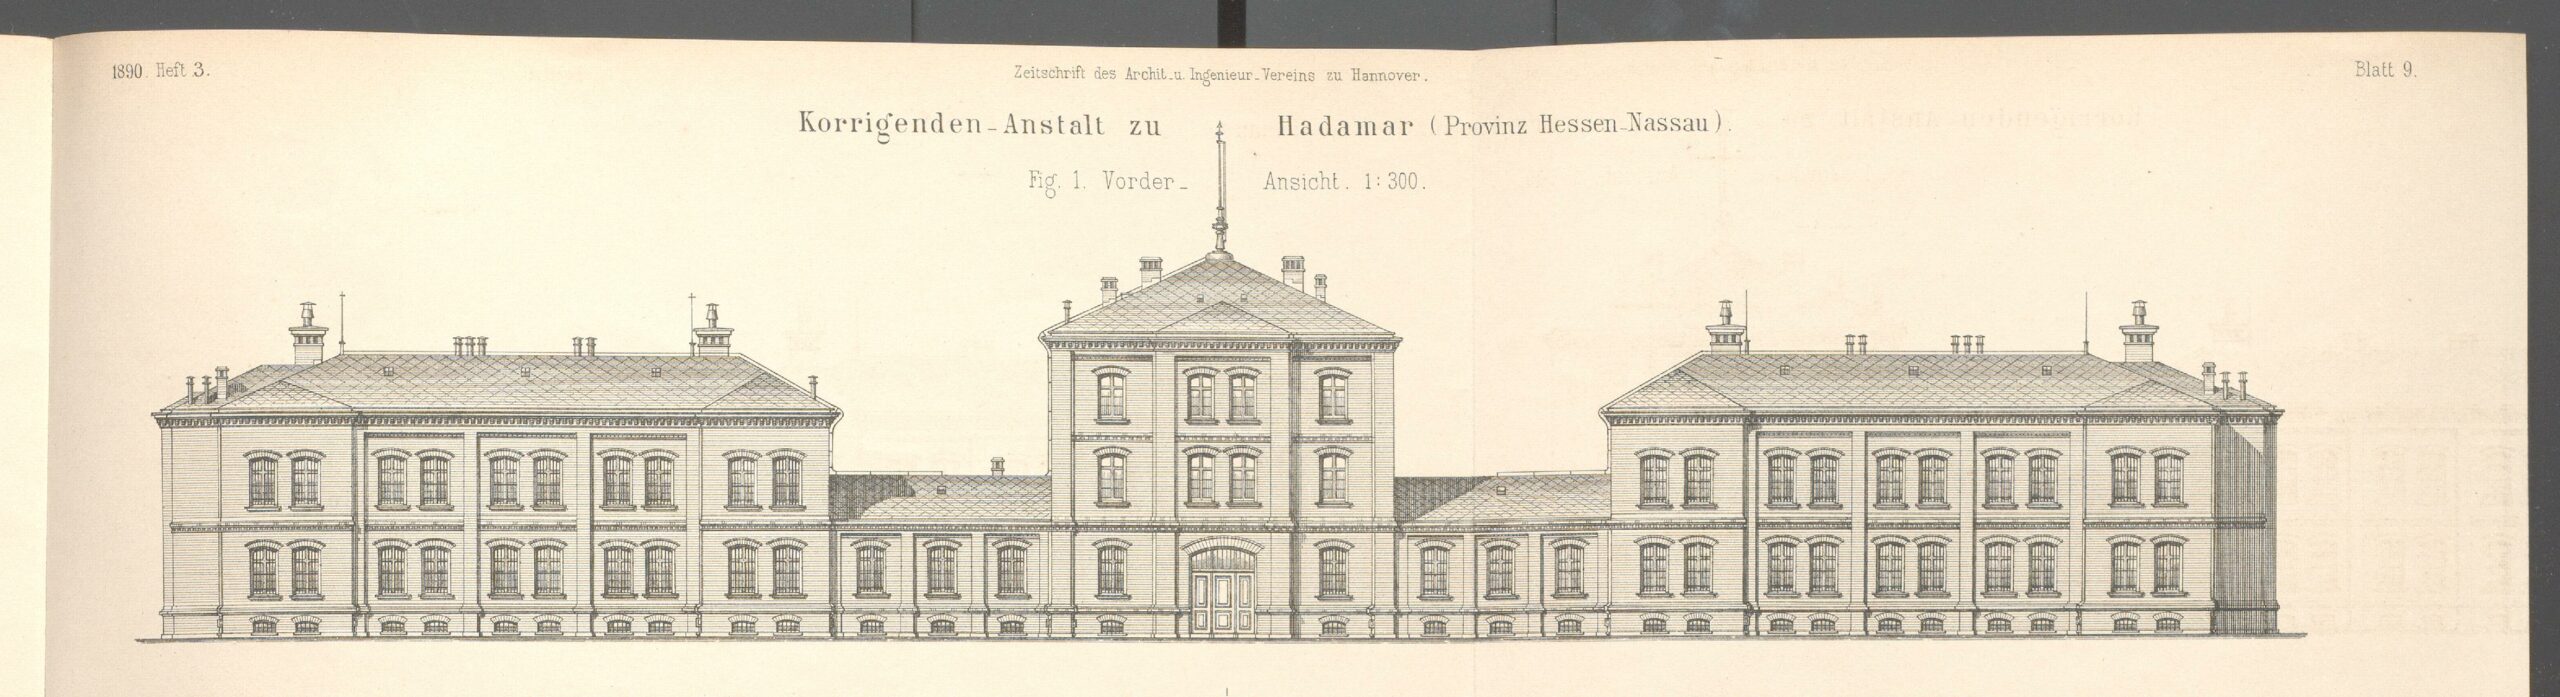 Schwarz-Weiß-Zeichnung der Gebäudefront eines großen Gebäudes mit dem Titel "Korrigenden-Anstalt zu Hadamar"